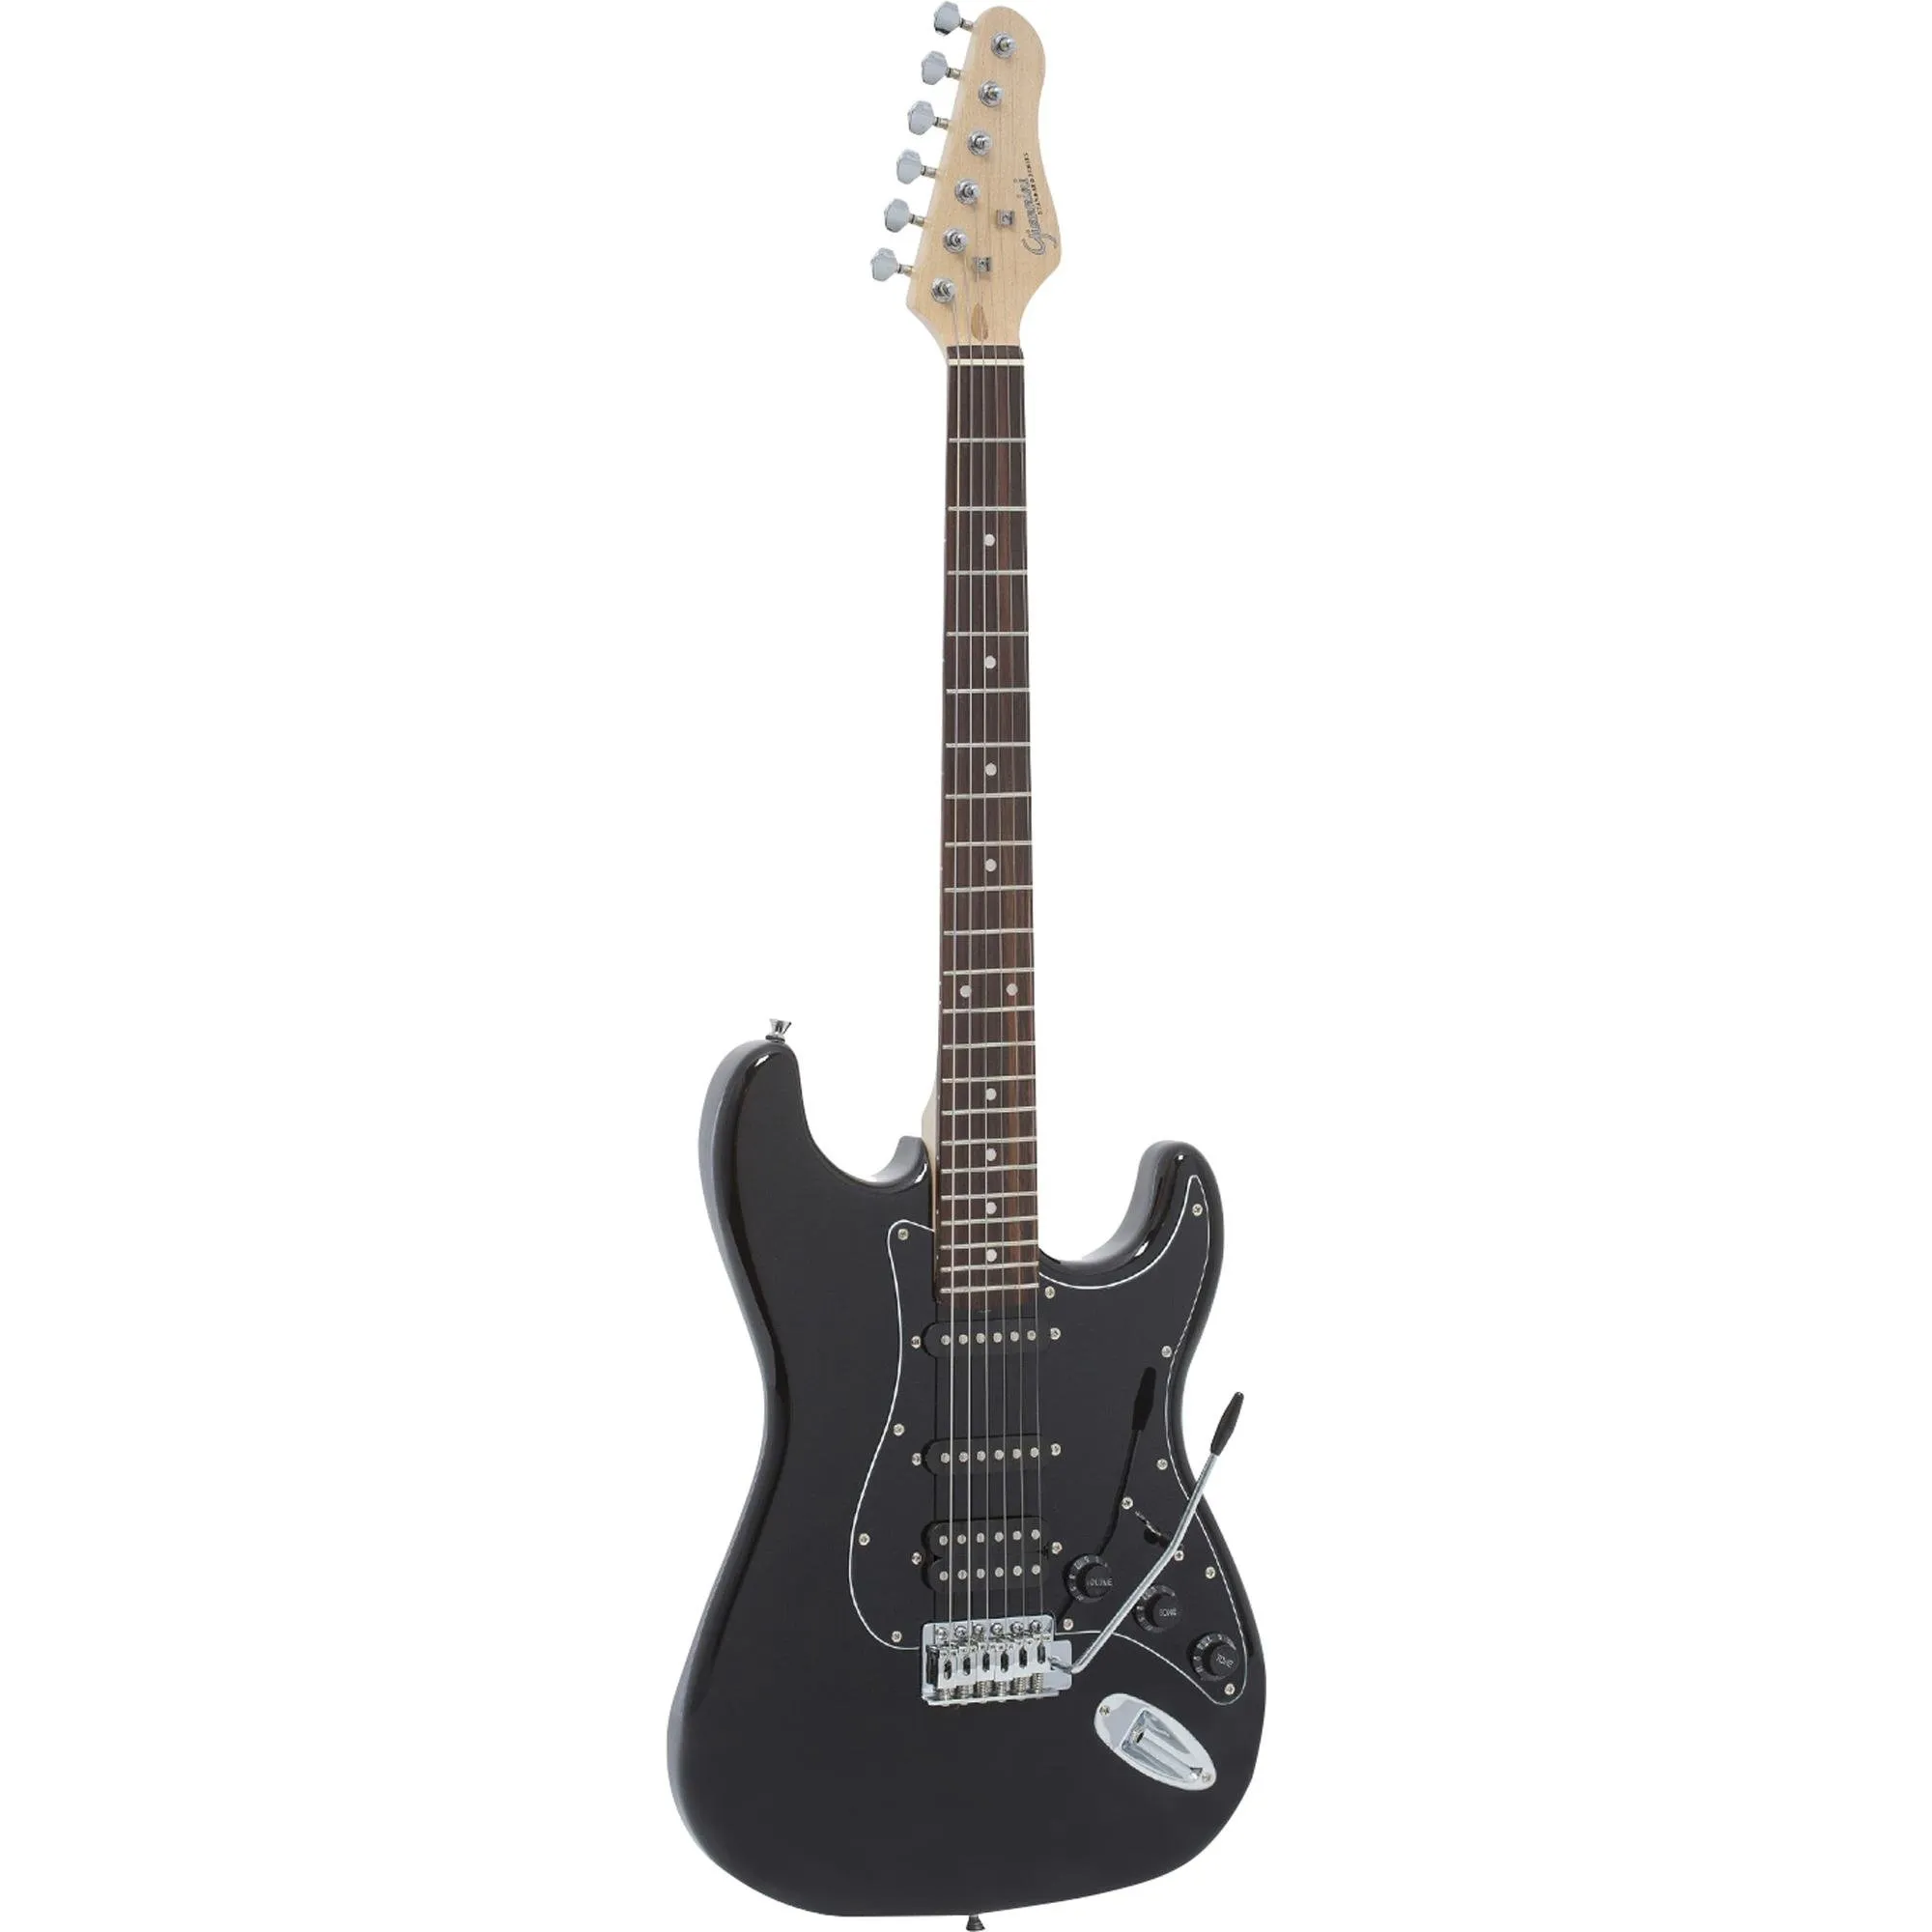 Guitarra Giannini G101 Preta Com Escudo Preto por 707,99 à vista no boleto/pix ou parcele em até 10x sem juros. Compre na loja Mundomax!